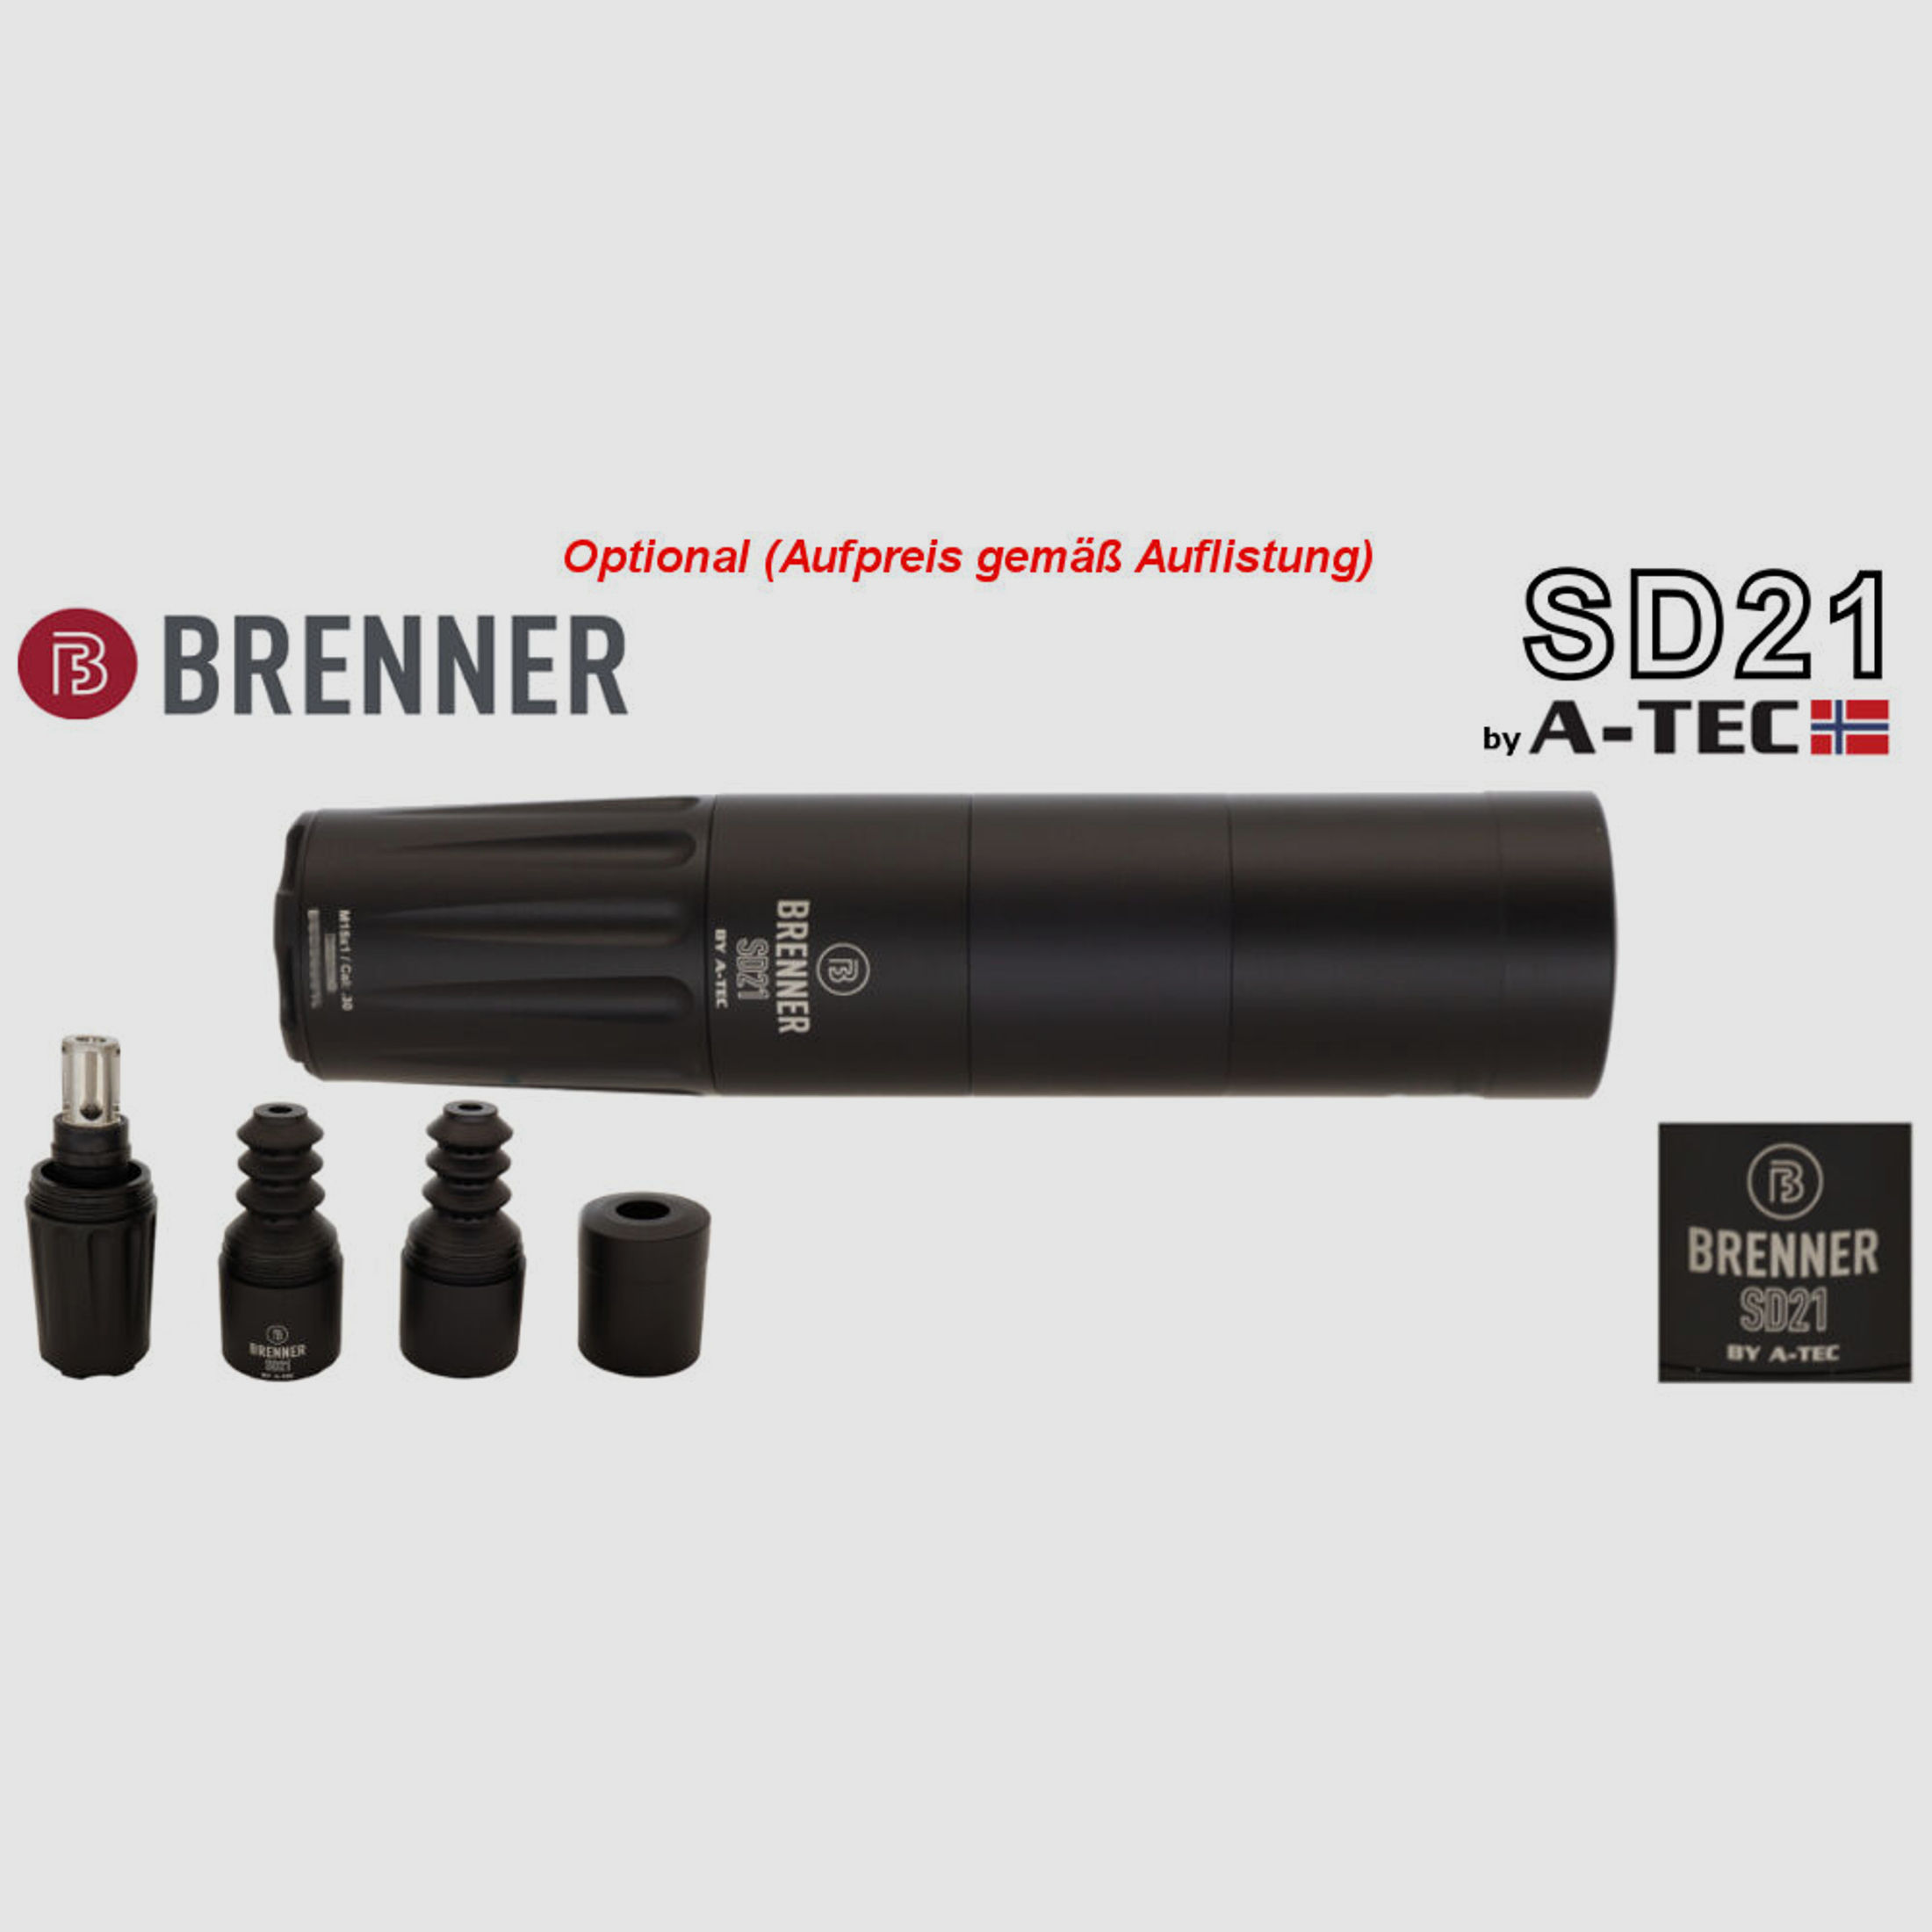 Bergara	 B14 B&H Prohunter LINKS Lochschaft mit Falke 3-12x56 fertig montiert / Optional: Brenner Schalldämpfer